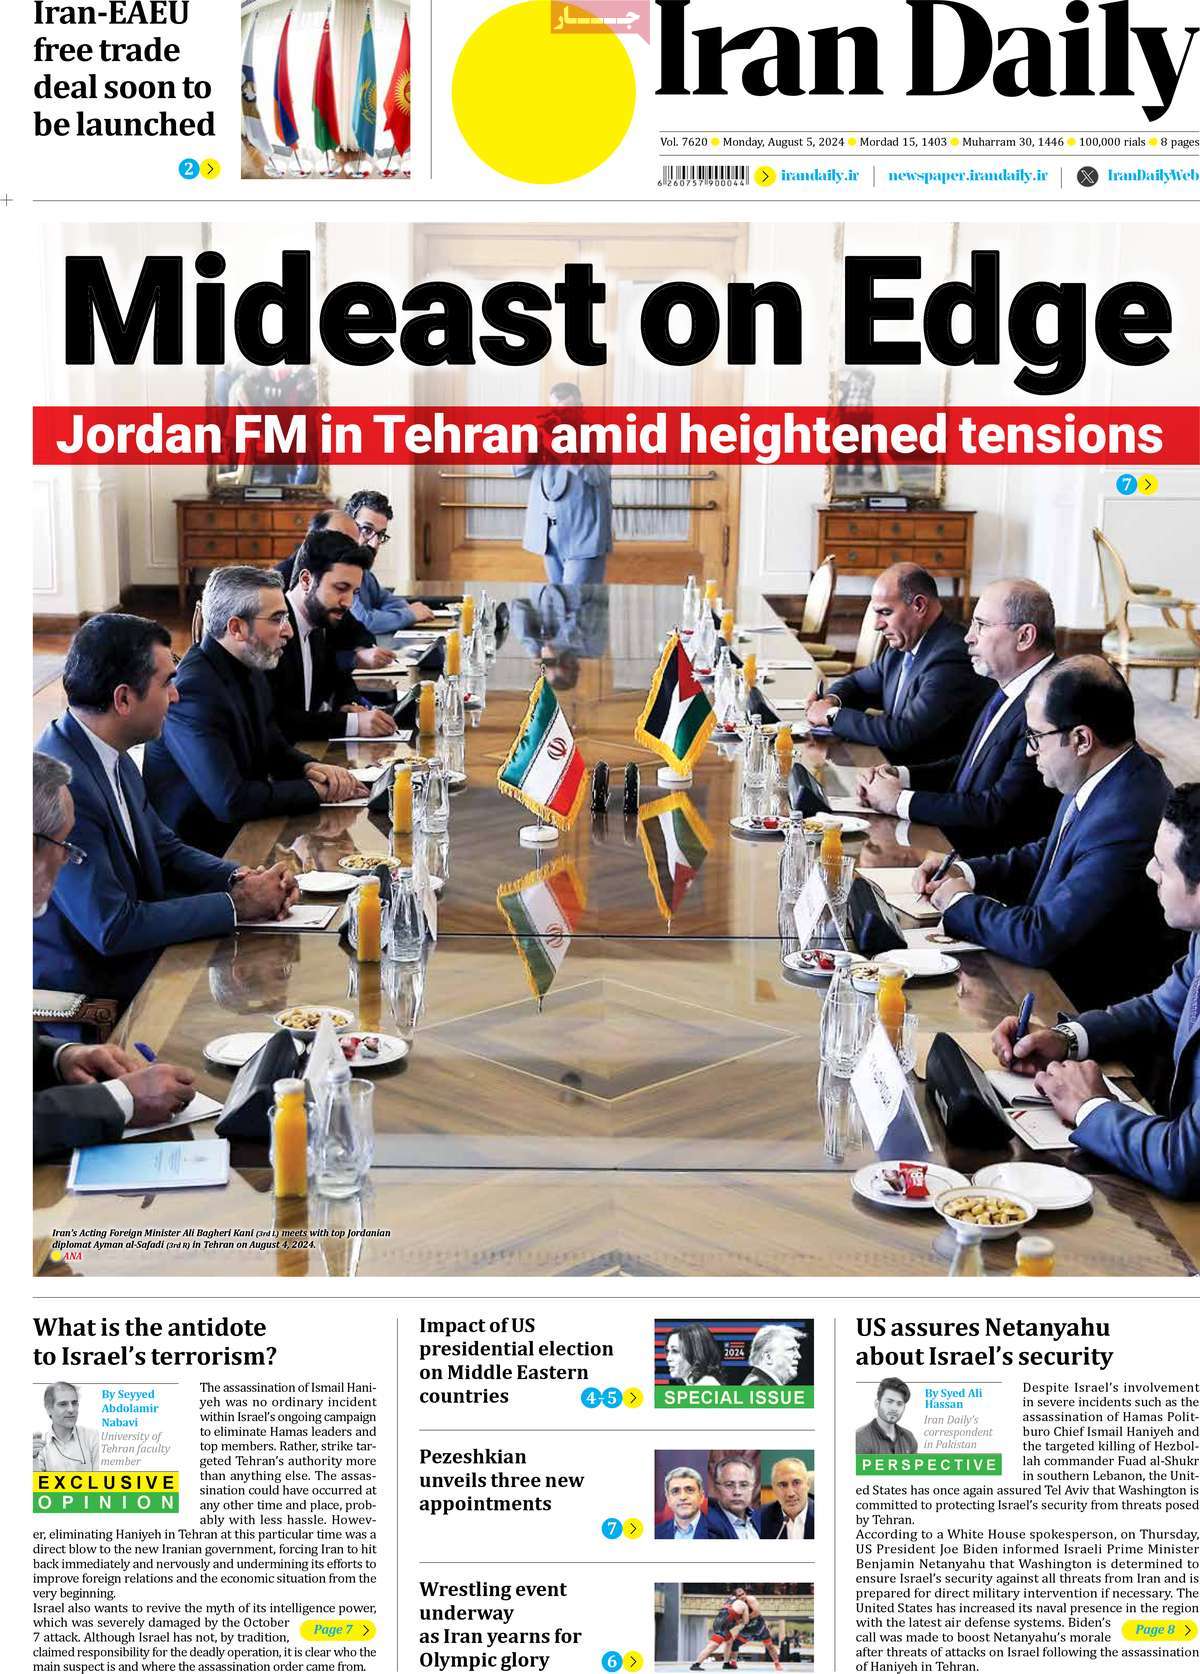 صفحه اول روزنامه Iran Daily